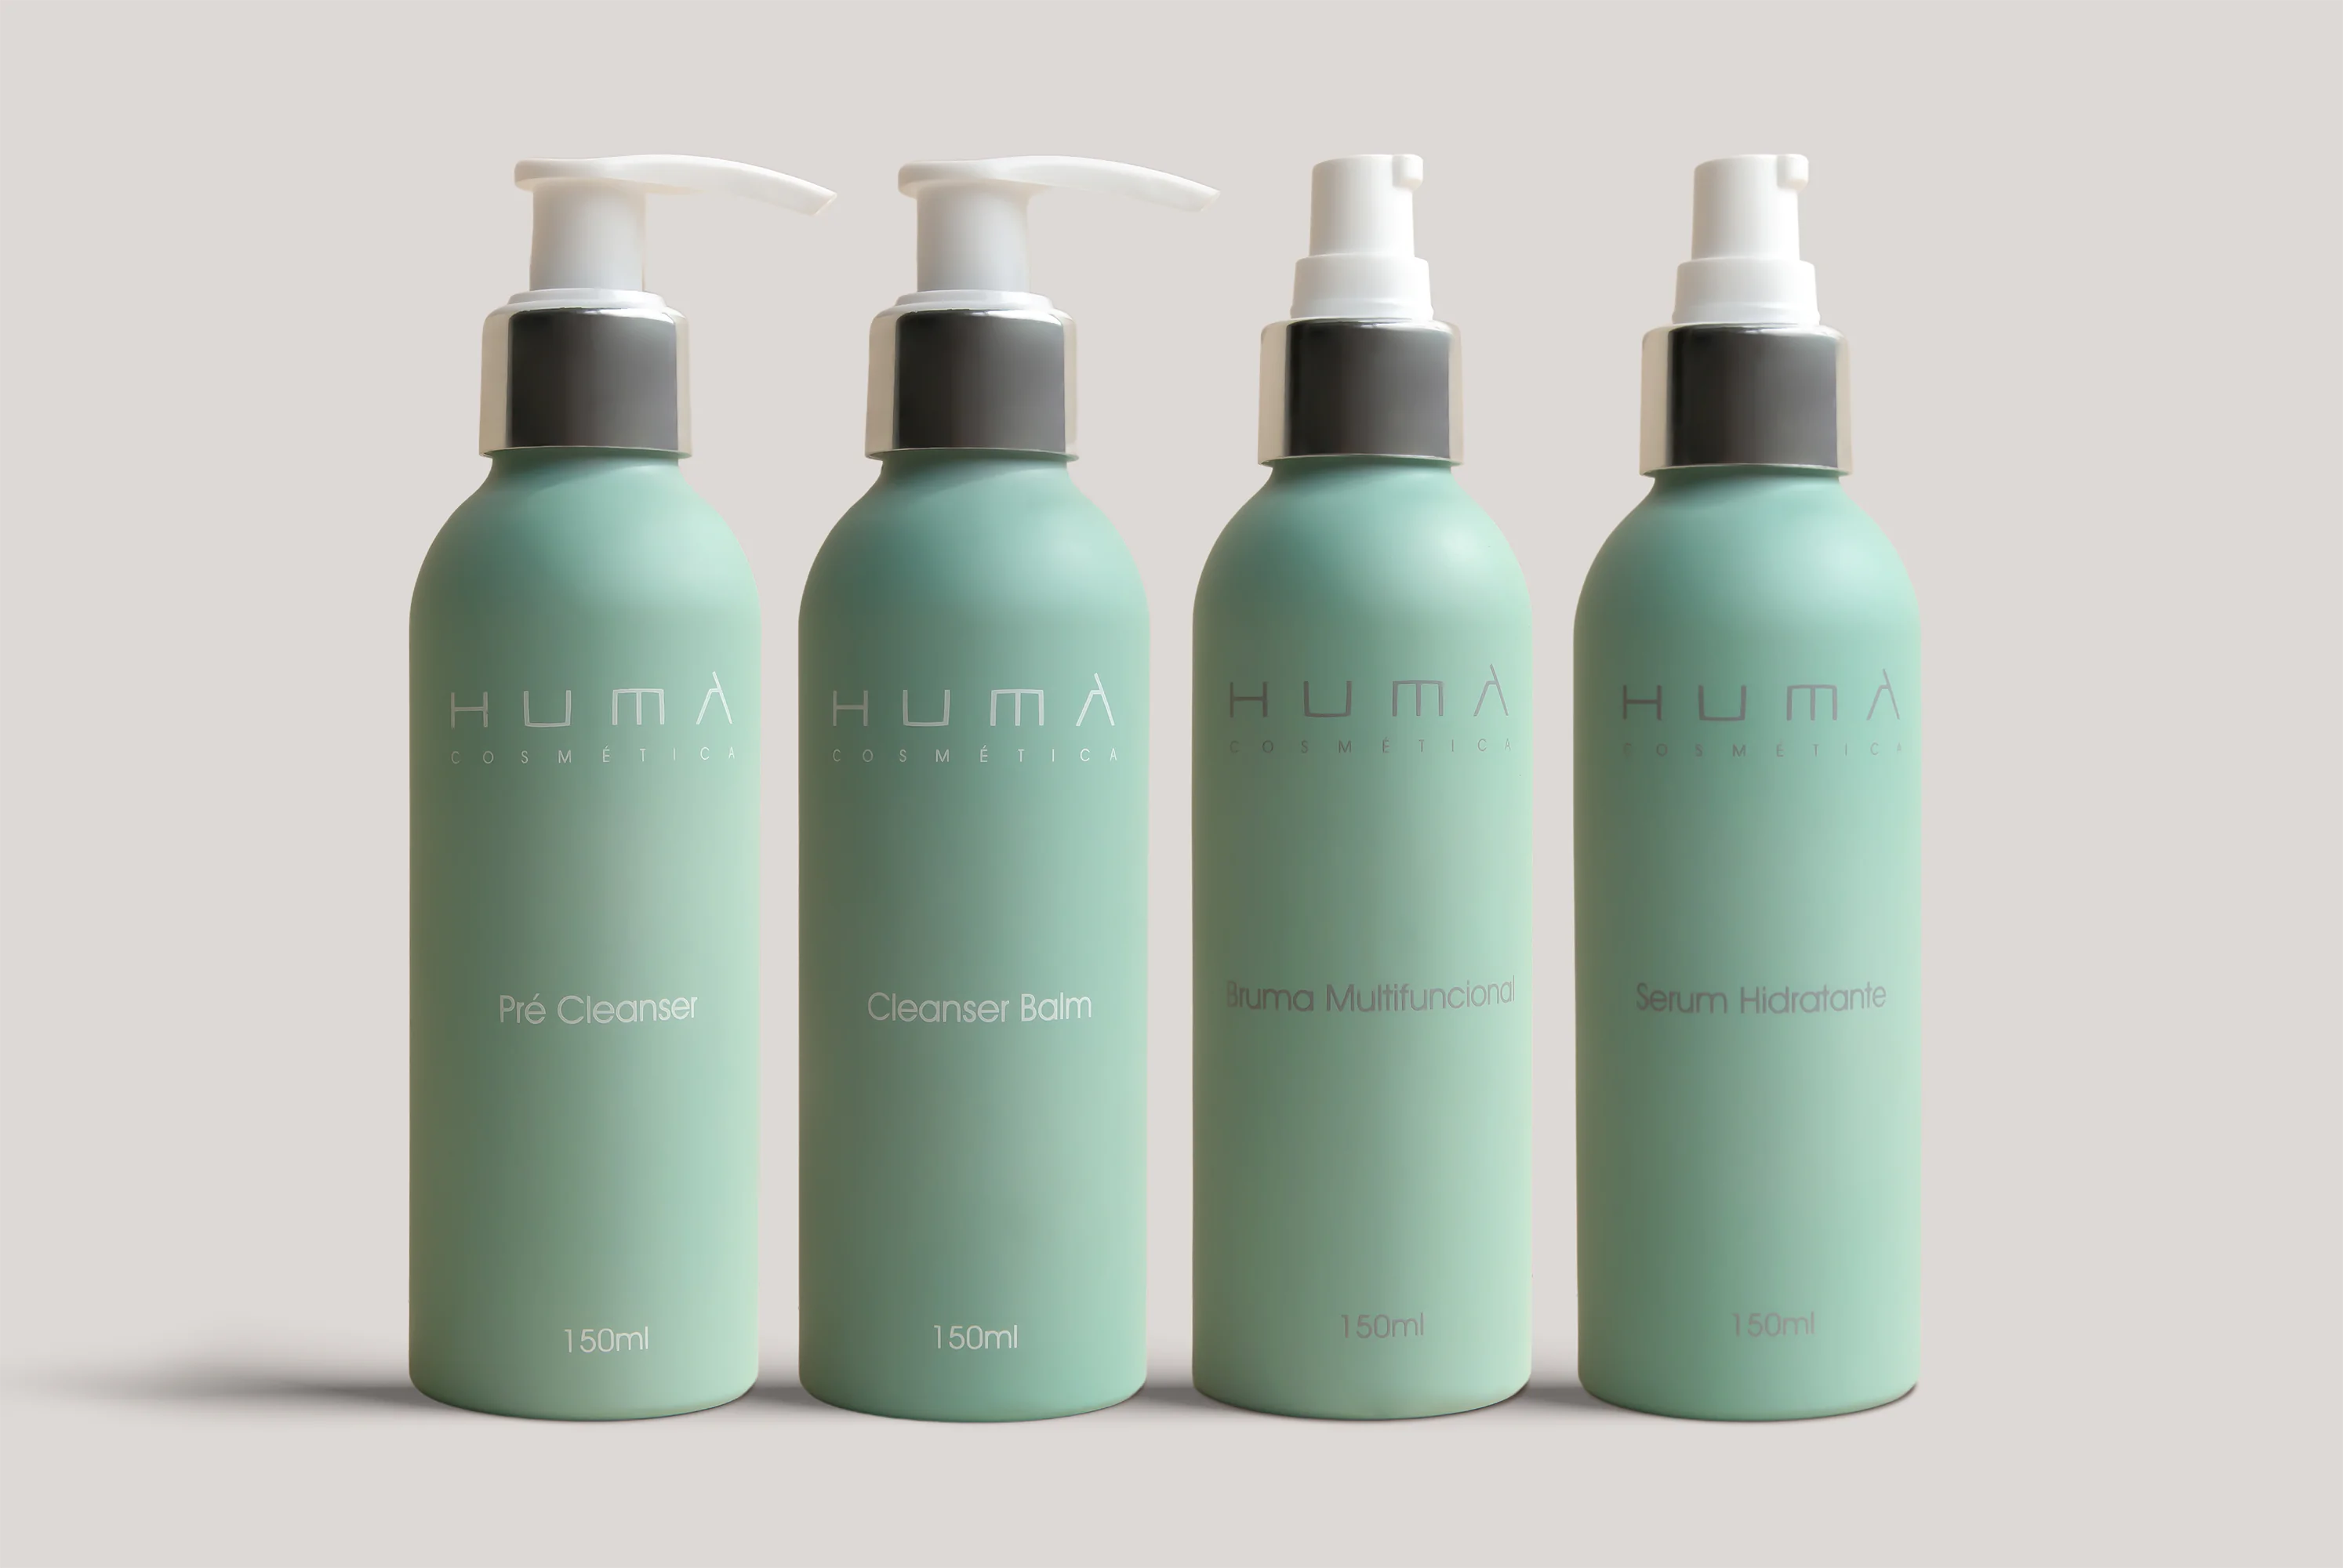 Promova a saúde da pele com os produtos Humà